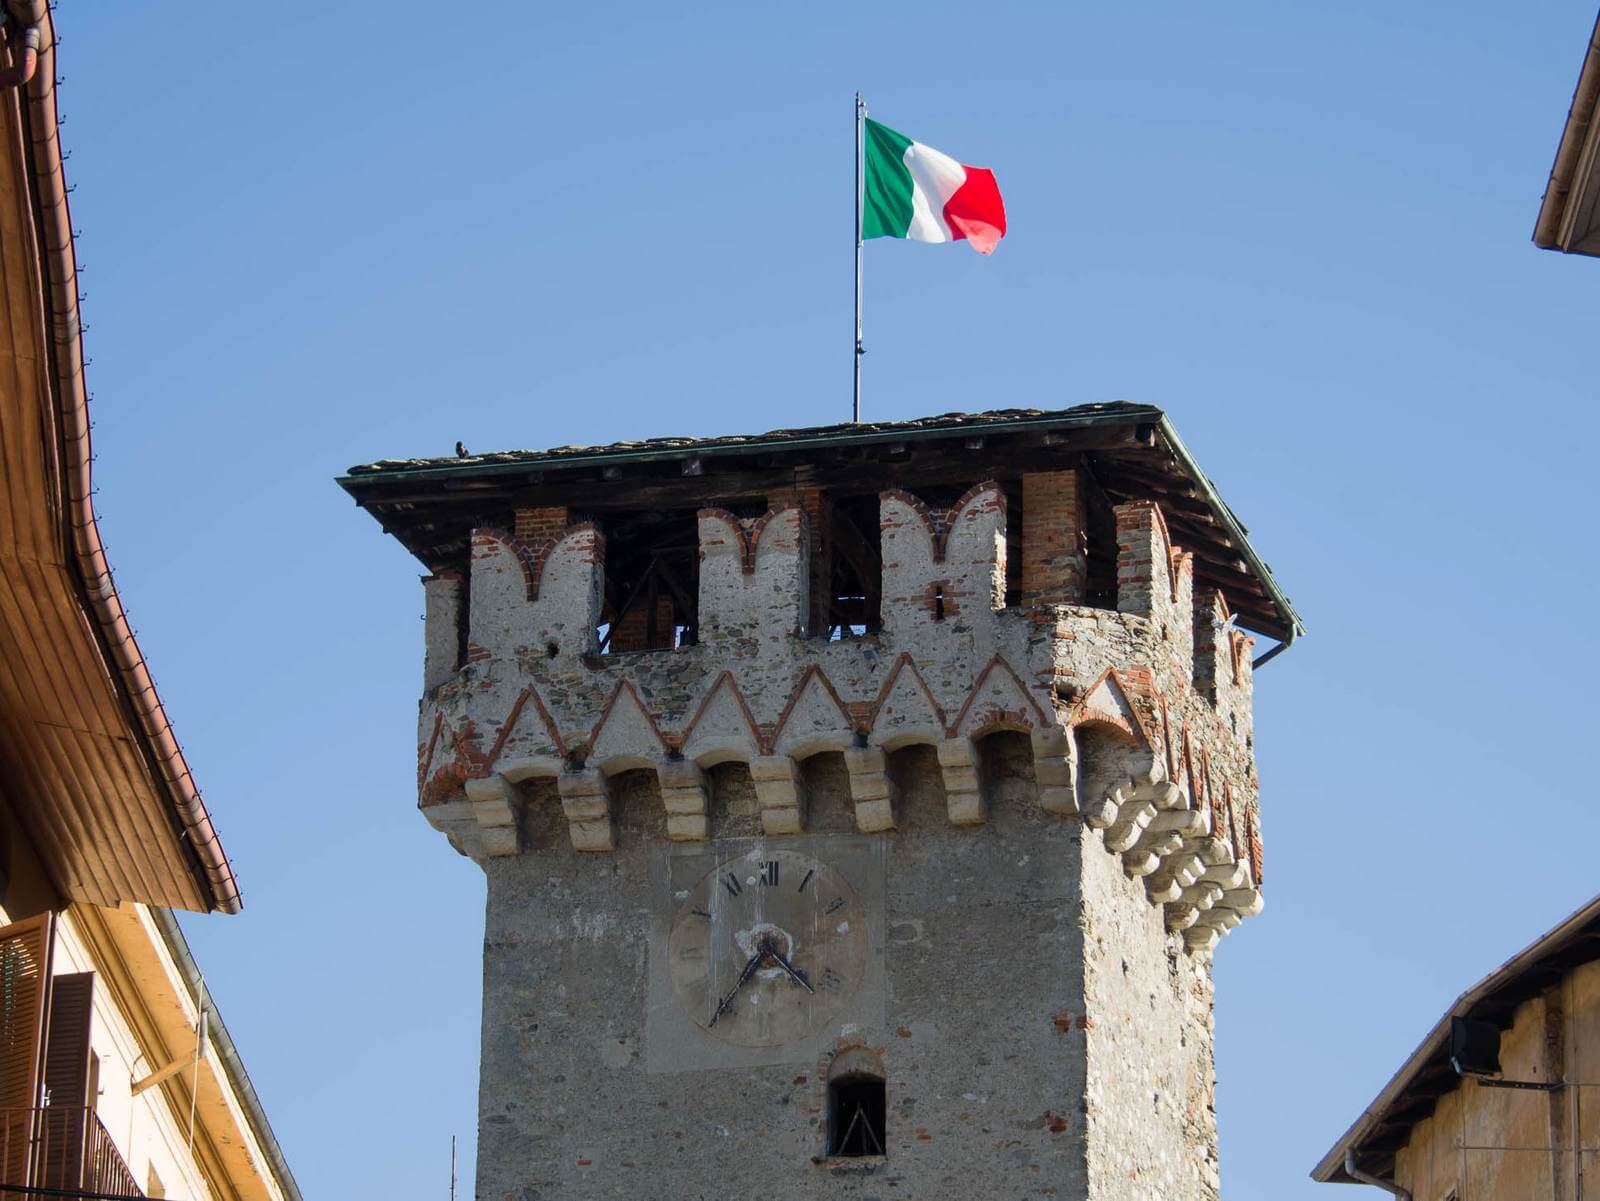 Foto: Ein charakteristischer mittelalterlicher Turm in der Altstadt von Lanzo Torinese  Matthias Mandler - Lupe Reisen